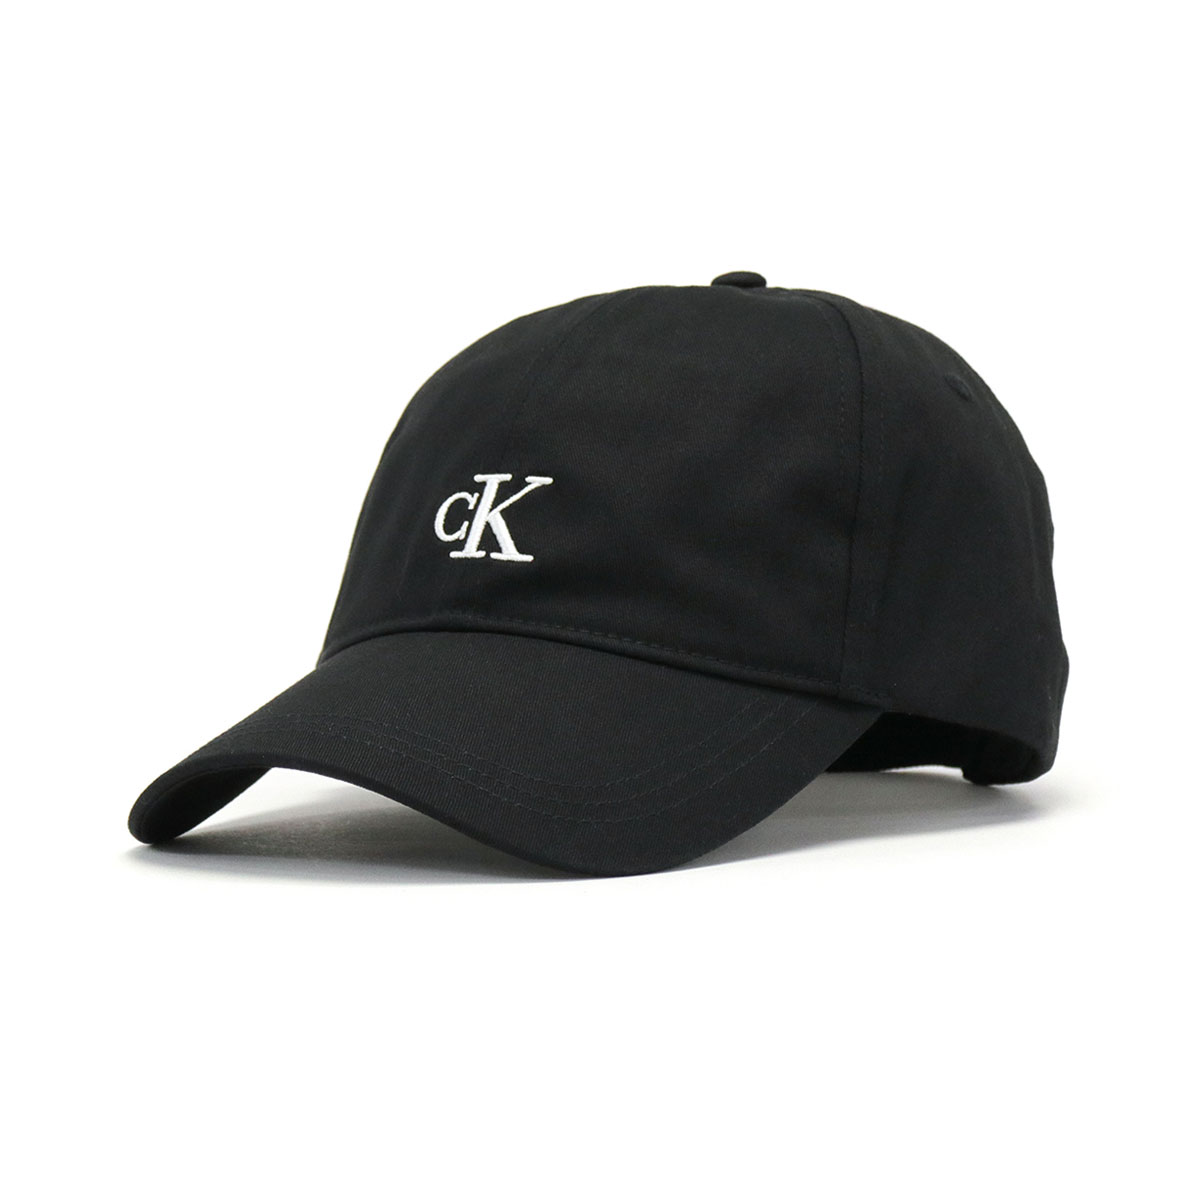 カルバンクラインジーンズ 帽子 Calvin Klein Jeans CARRYOVER EMBROIDERY CAP フリーサイズ 調節可能 春夏  メンズ レディース HX0220